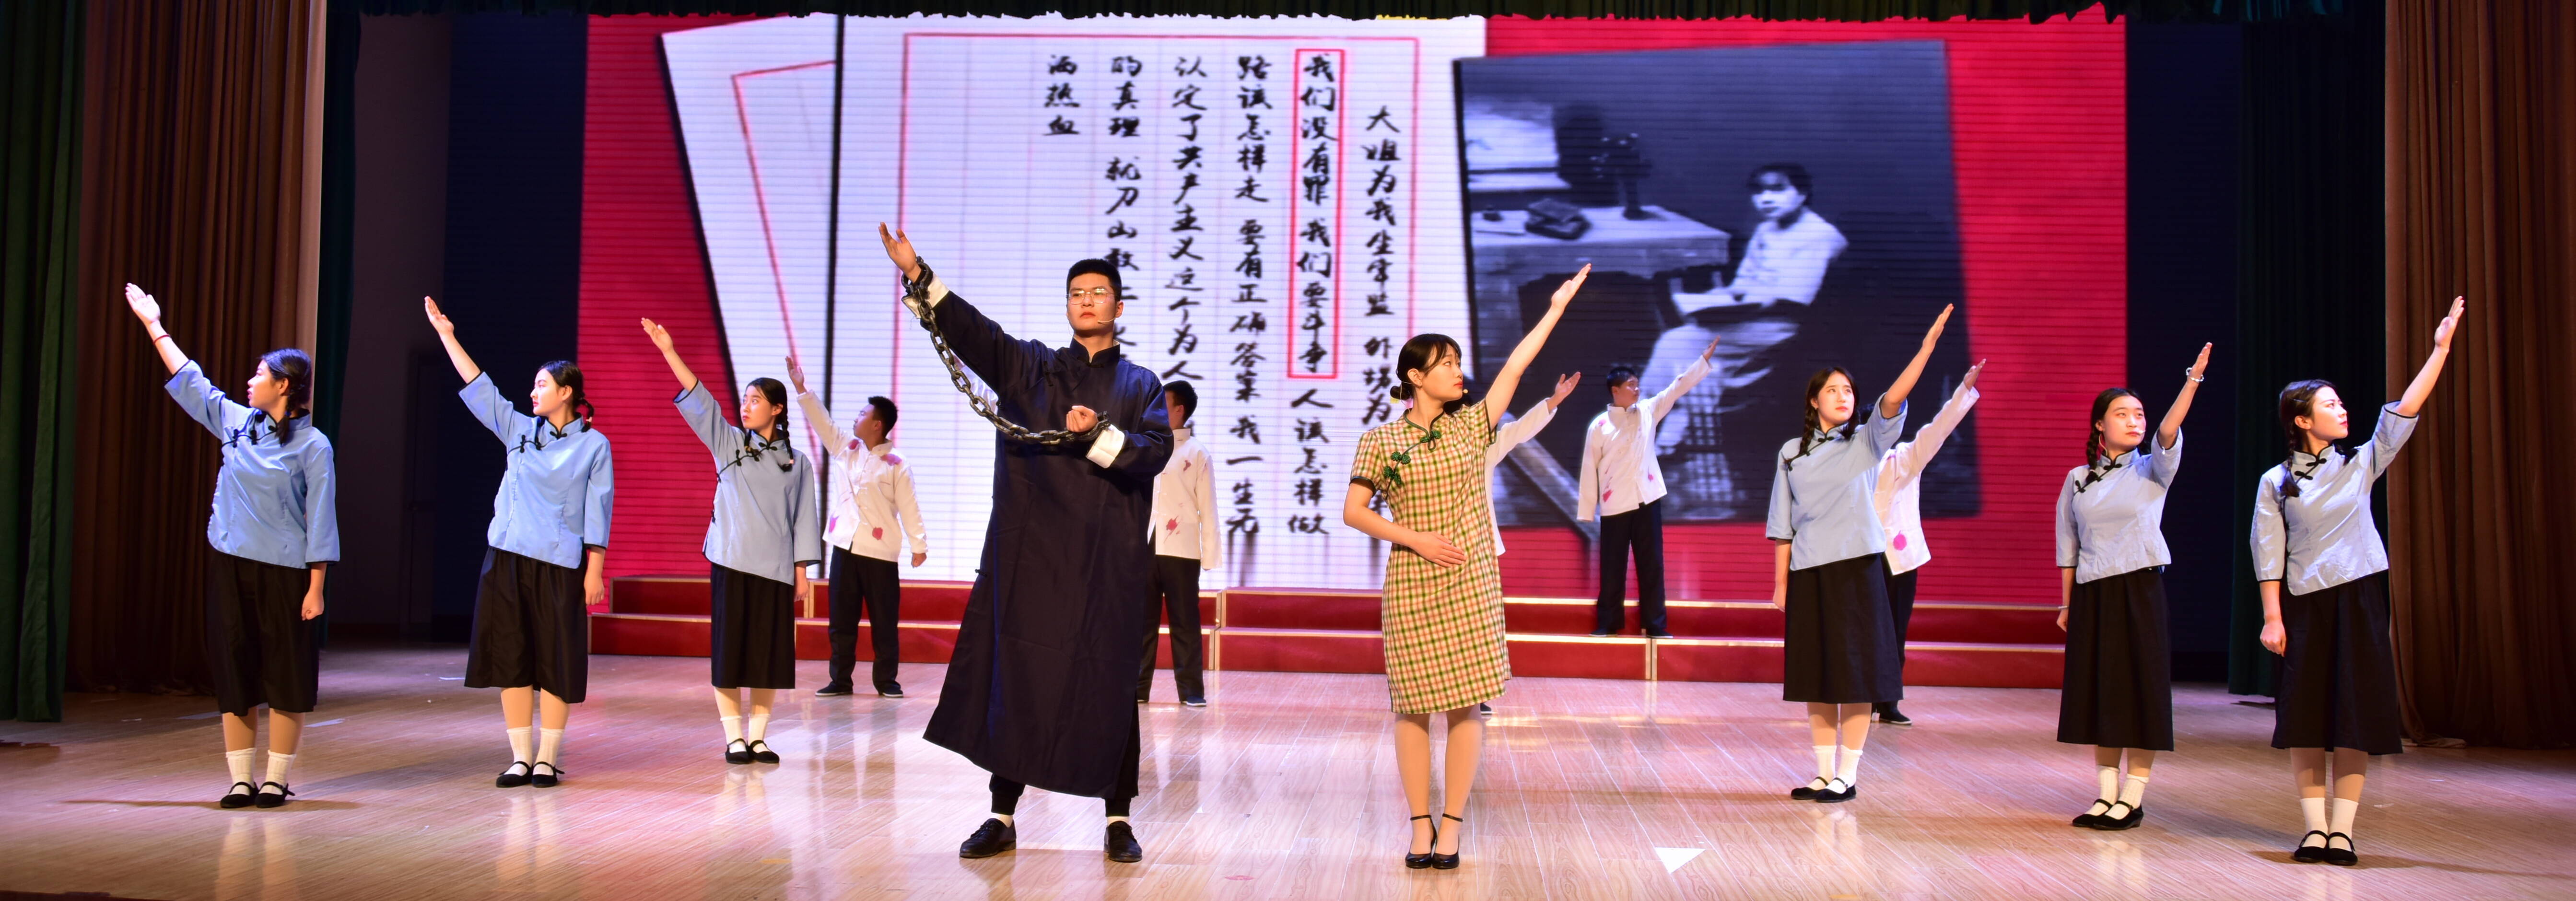 山东省莱阳卫生学校举行首届红色家书情景朗诵会